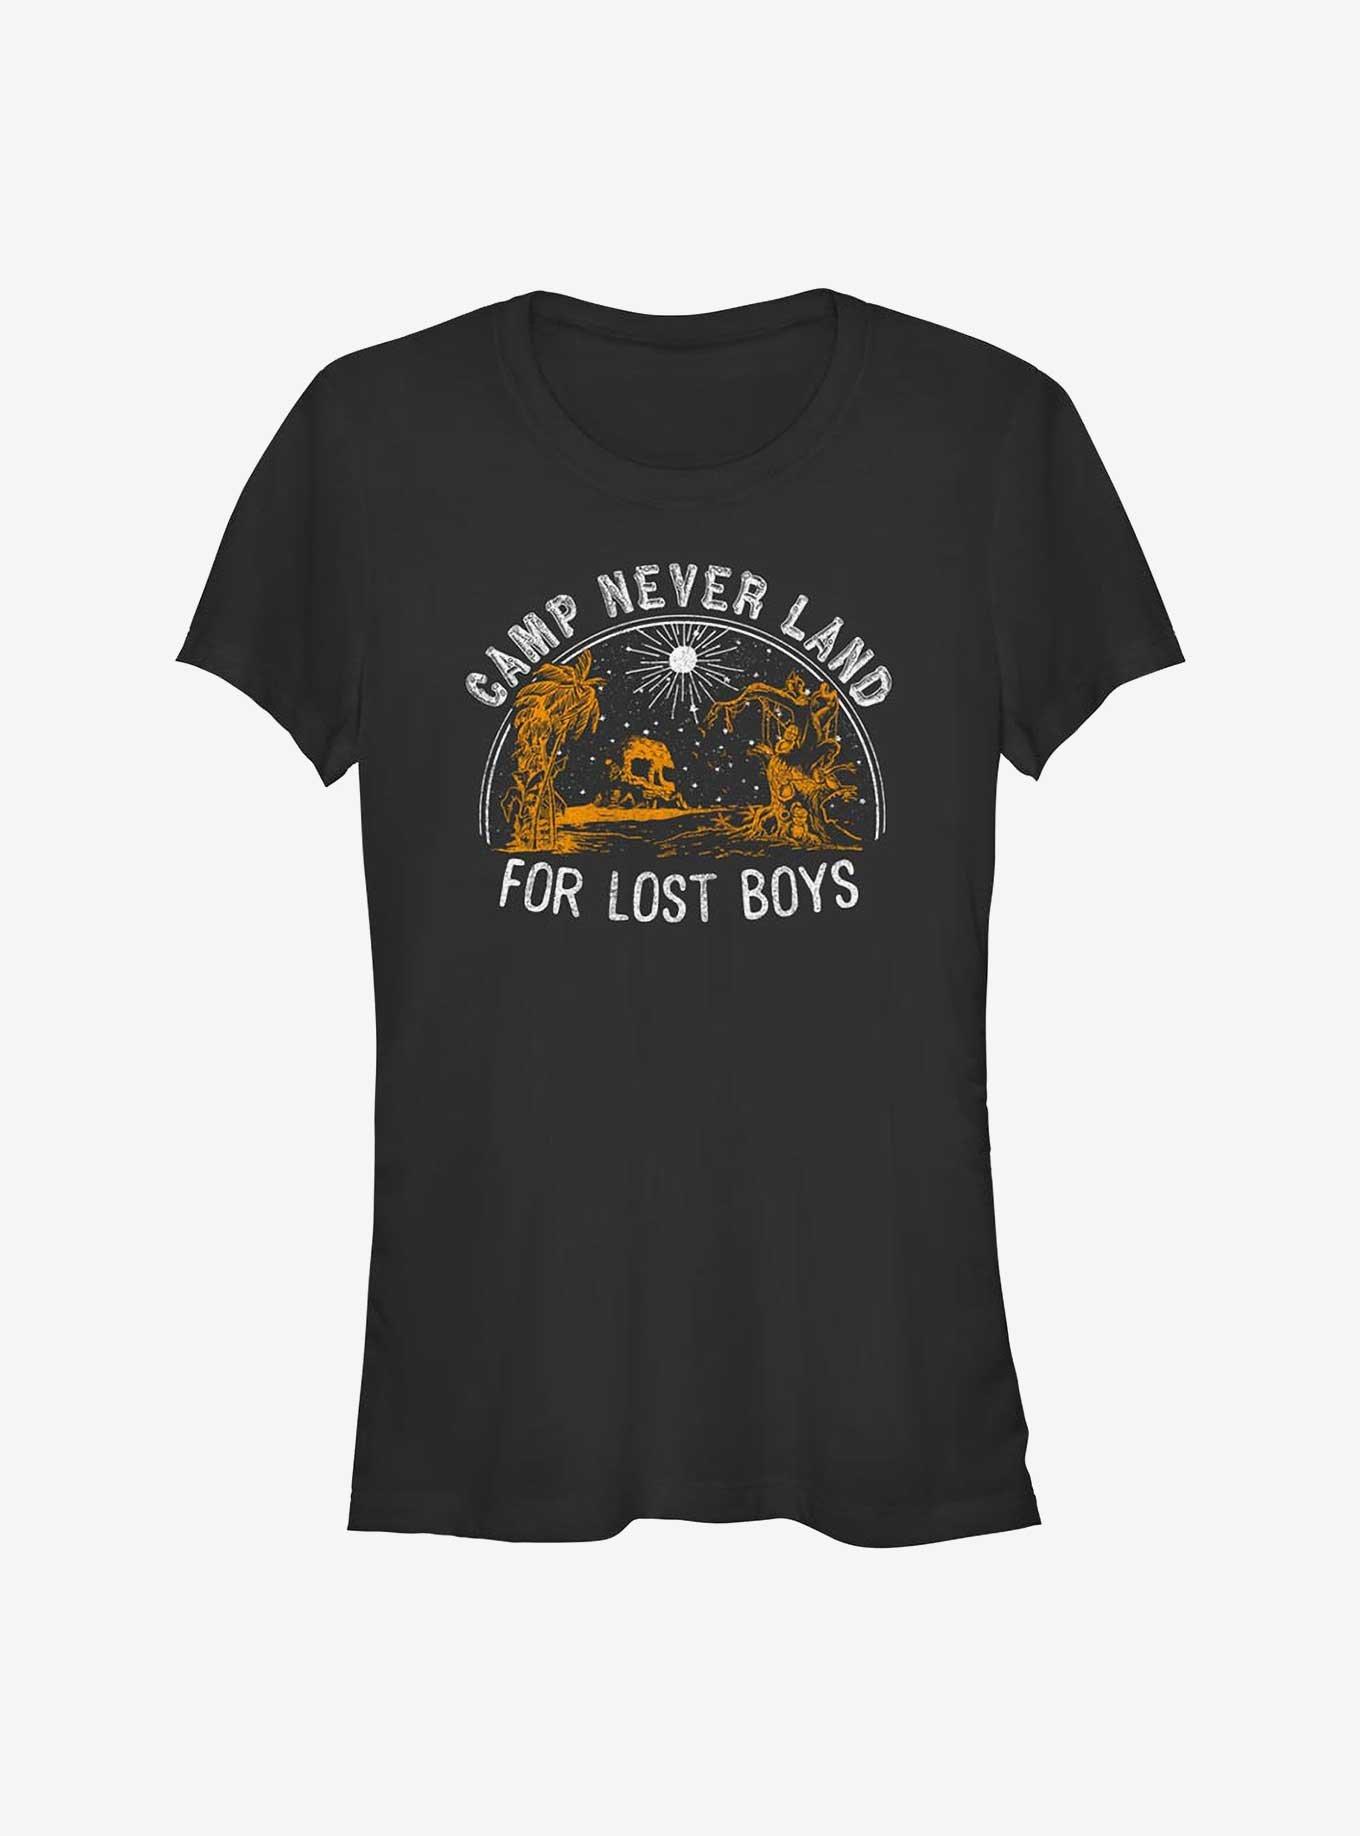 Disney Tinker Bell Camp Never Land For Lost Boys Girls T-Shirt, BLACK, hi-res